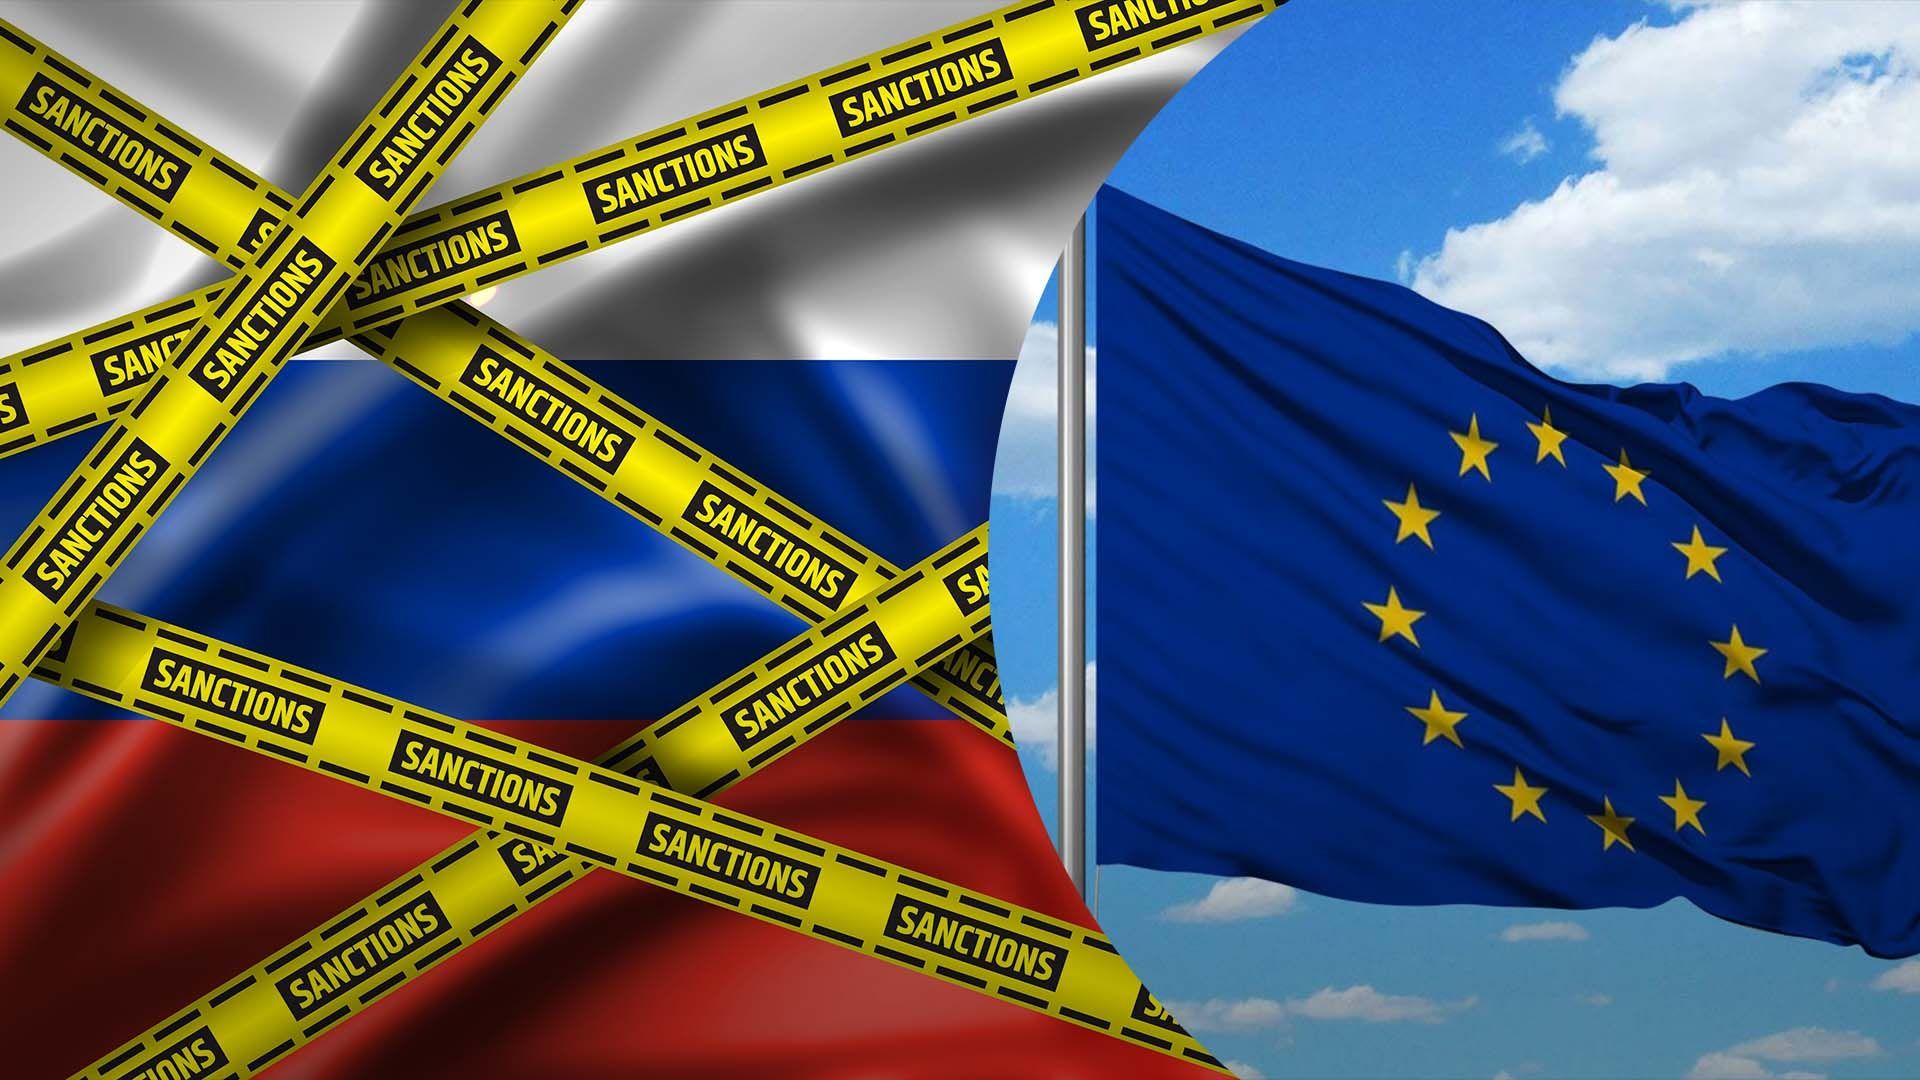 ЄС готує нові санкції проти Росії та Білорусі